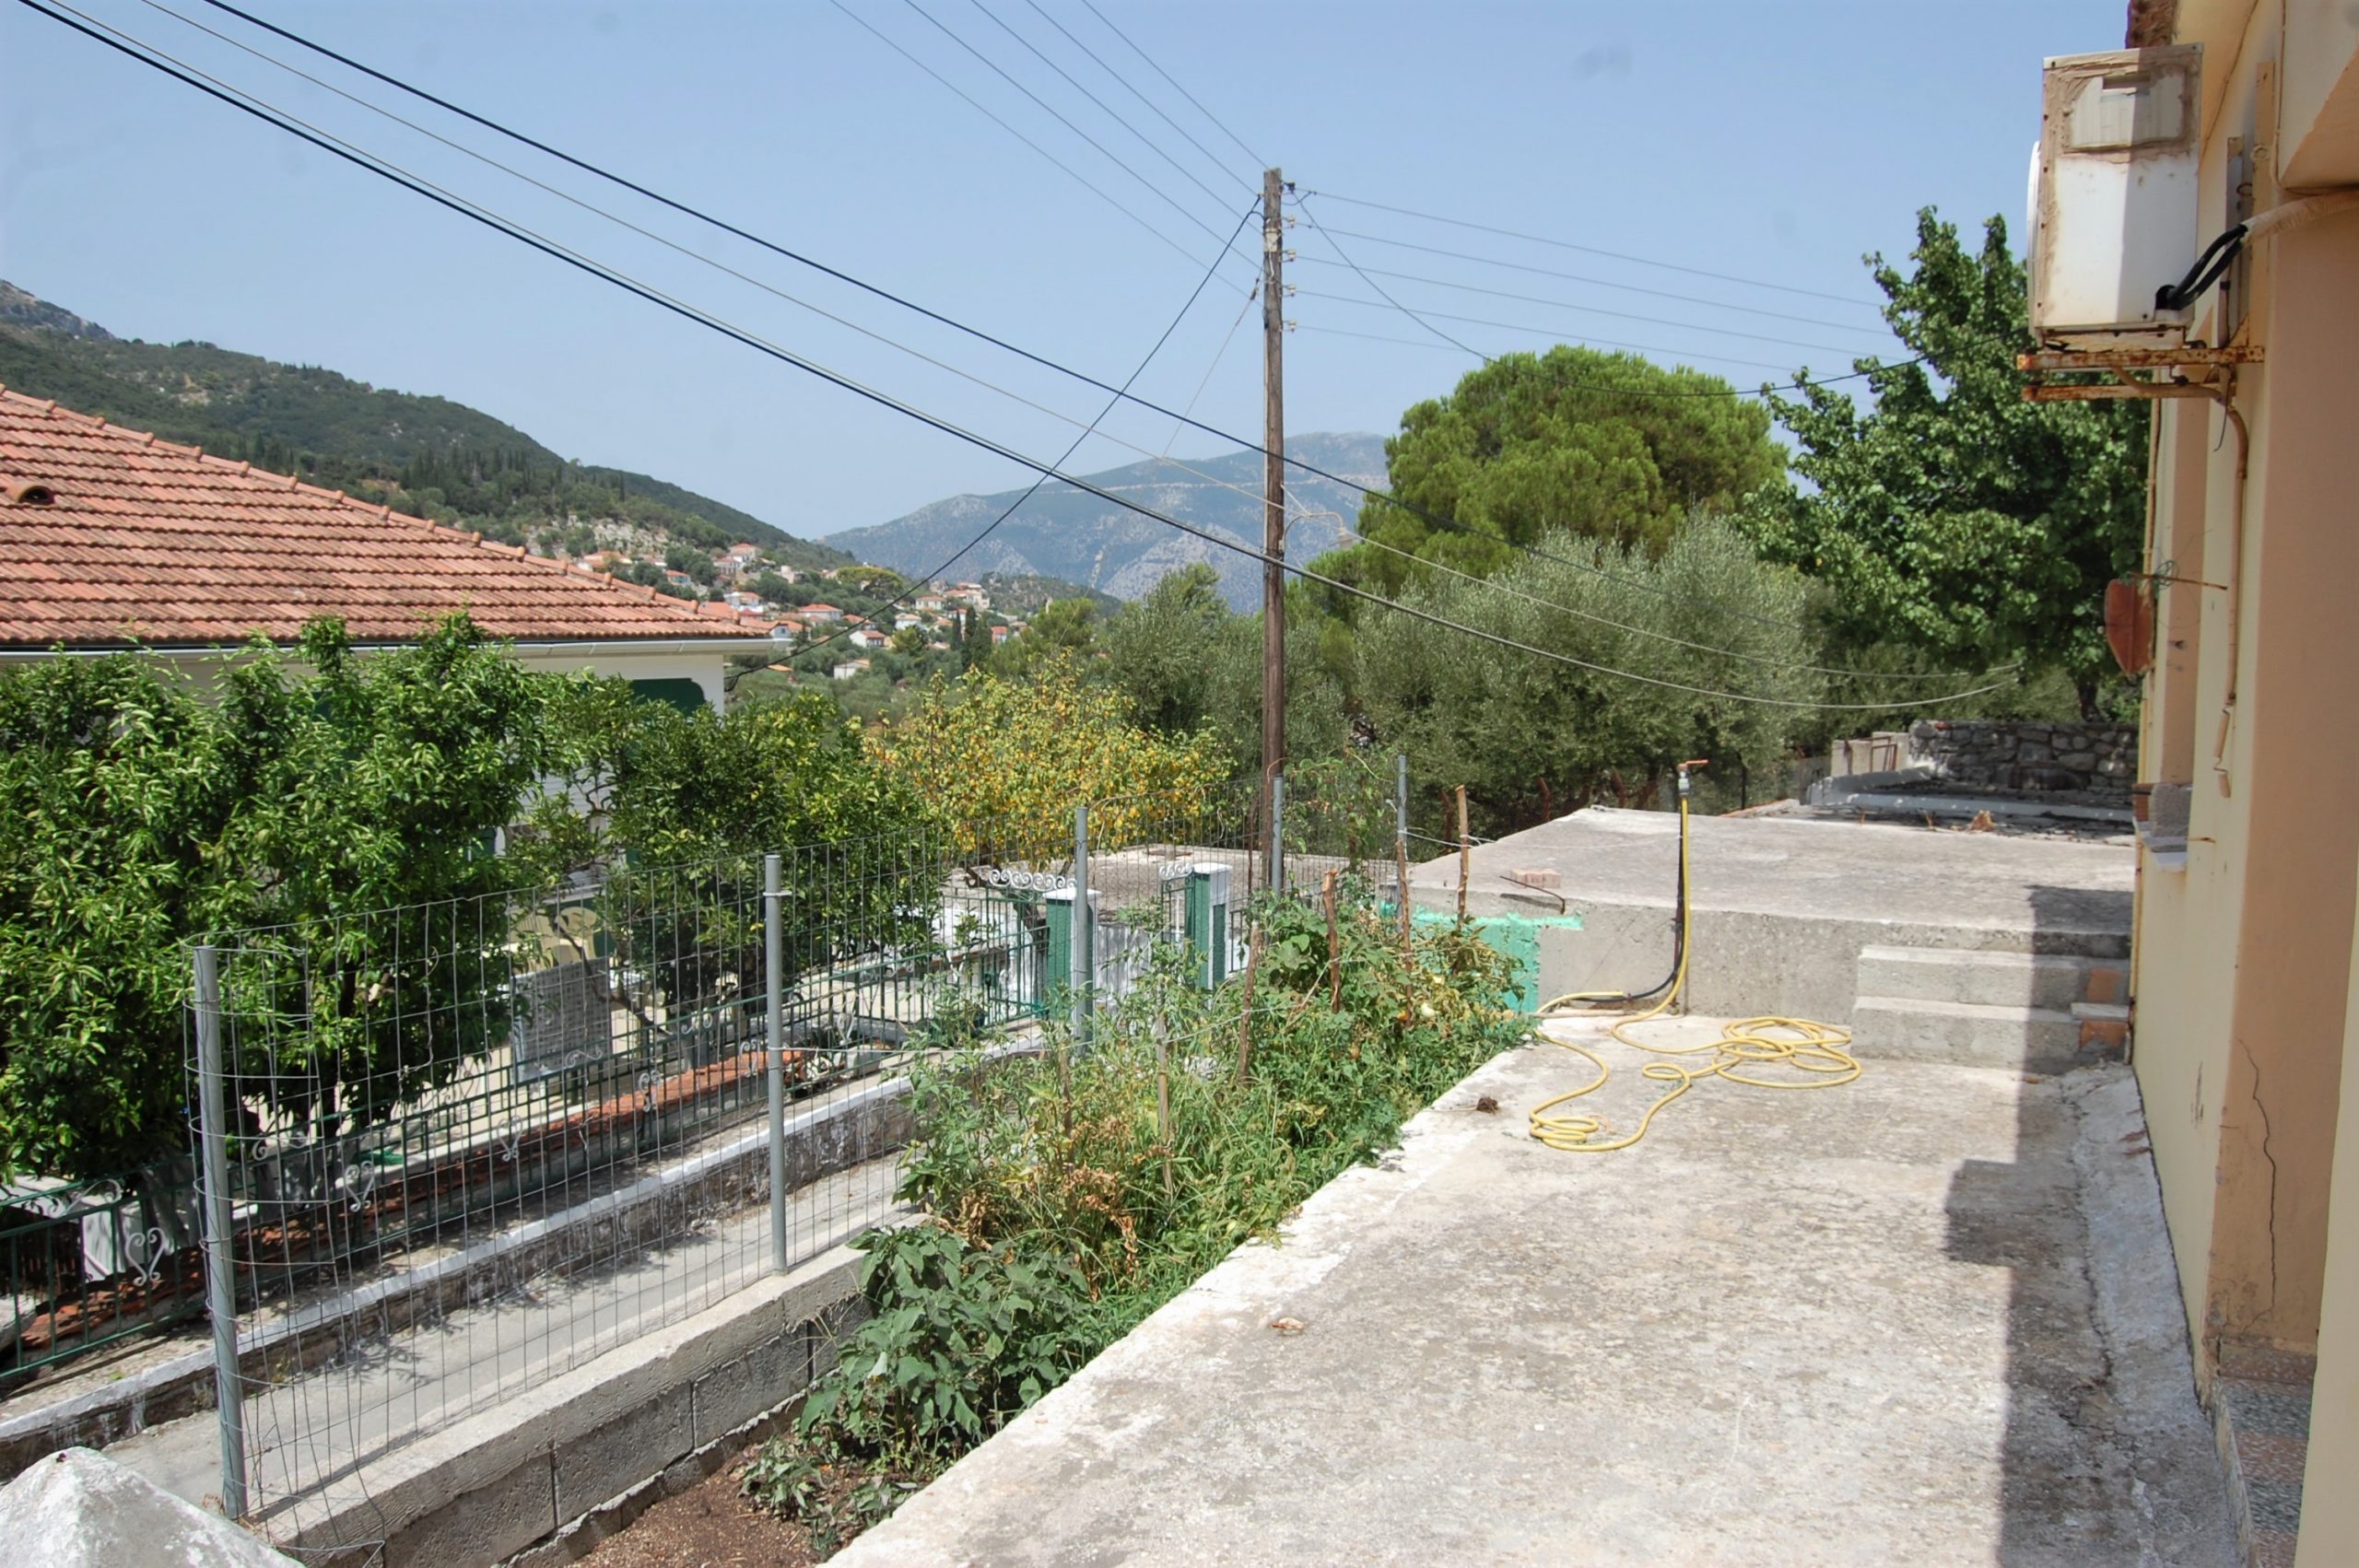 Εξωτερικός χώρος κατοικίας προς πώληση Ιθάκι Ελλάδα, Βαθύ